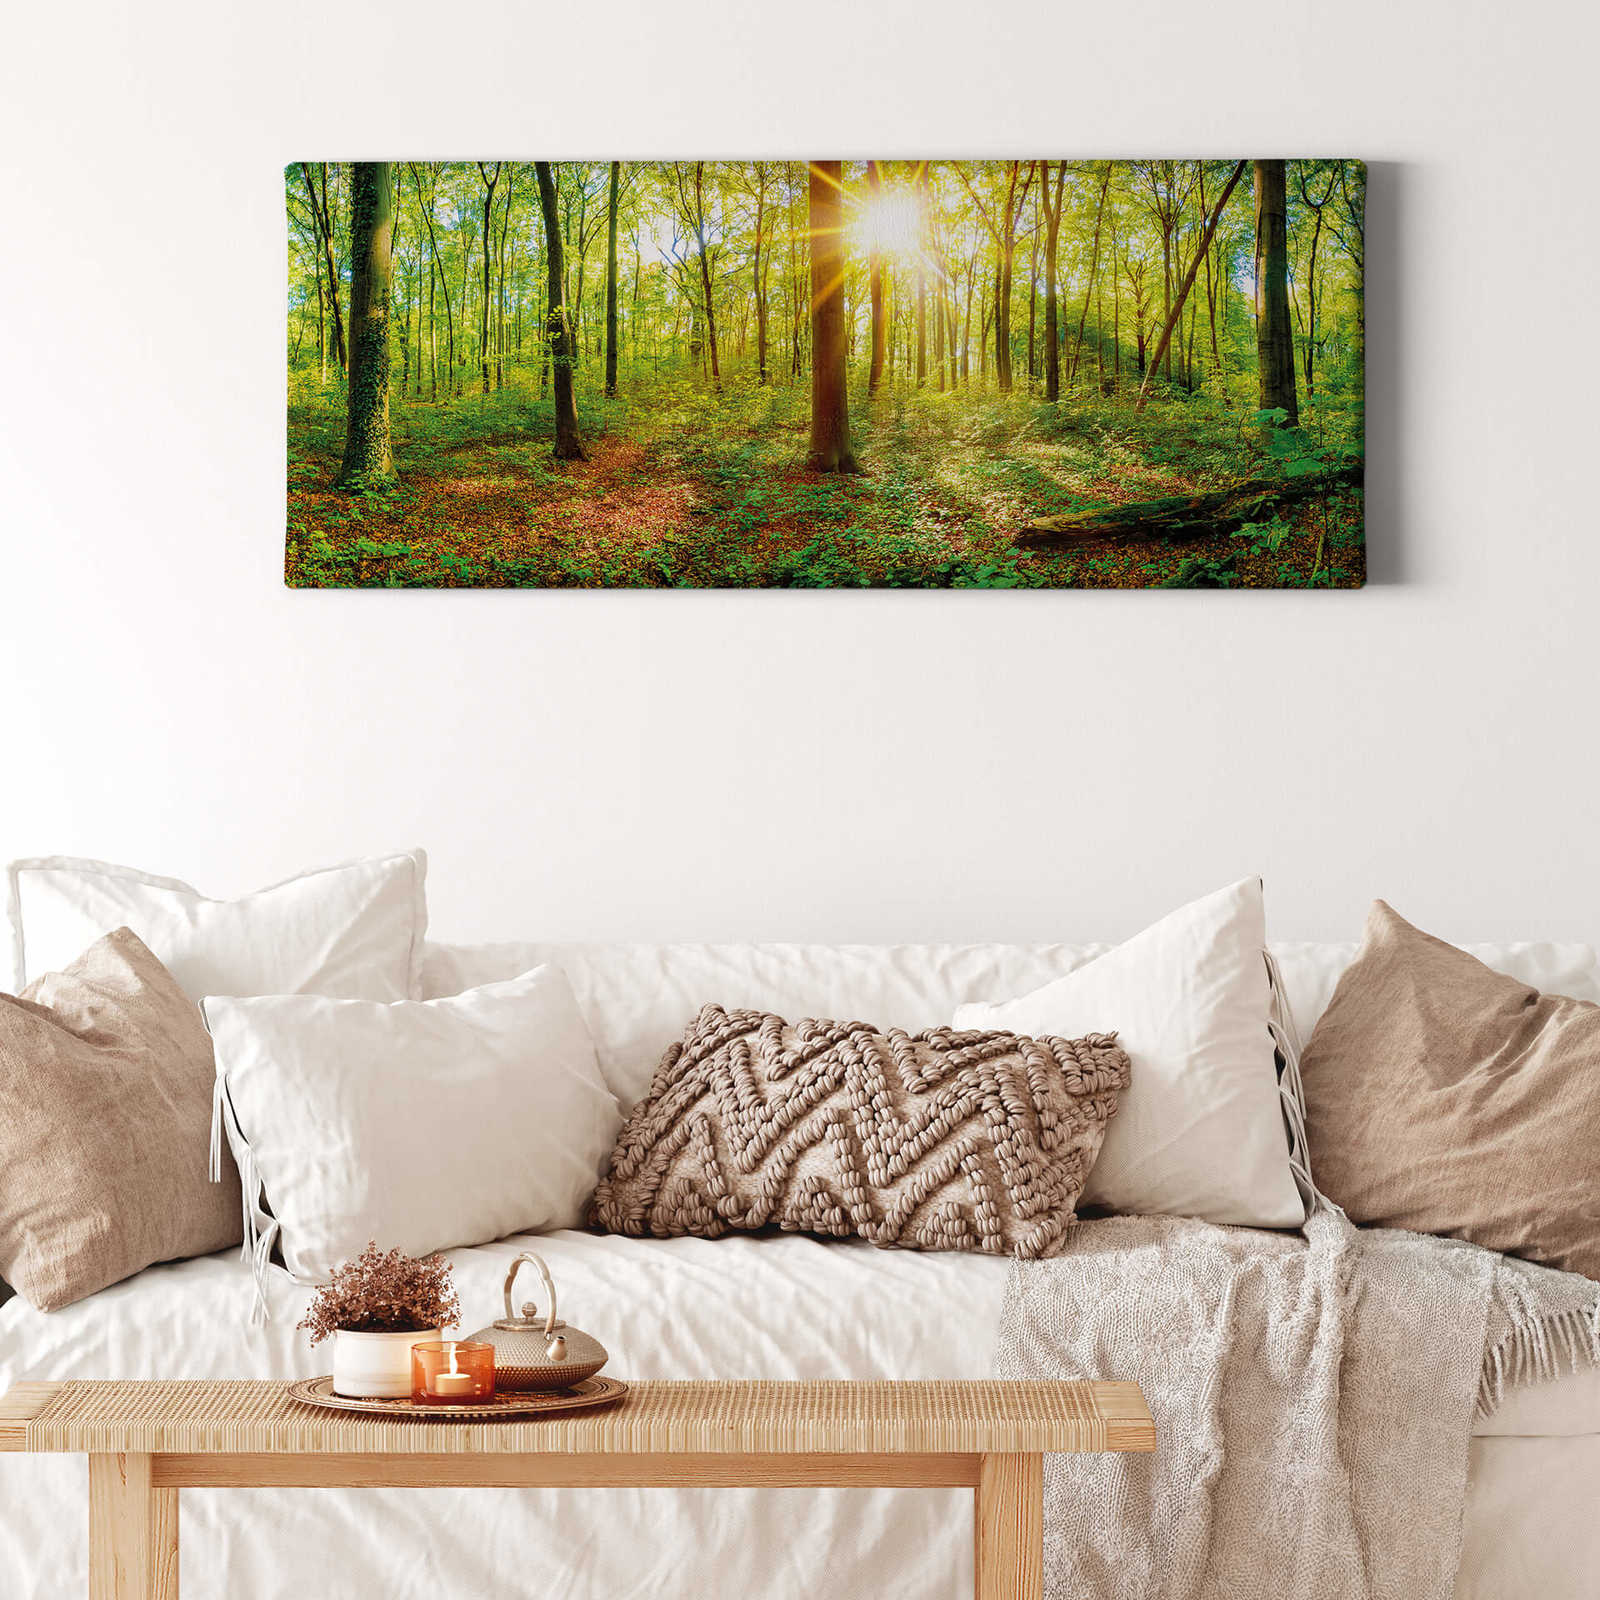             Tableau sur toile Au milieu de la forêt au soleil - 1,00 m x 0,40 m
        